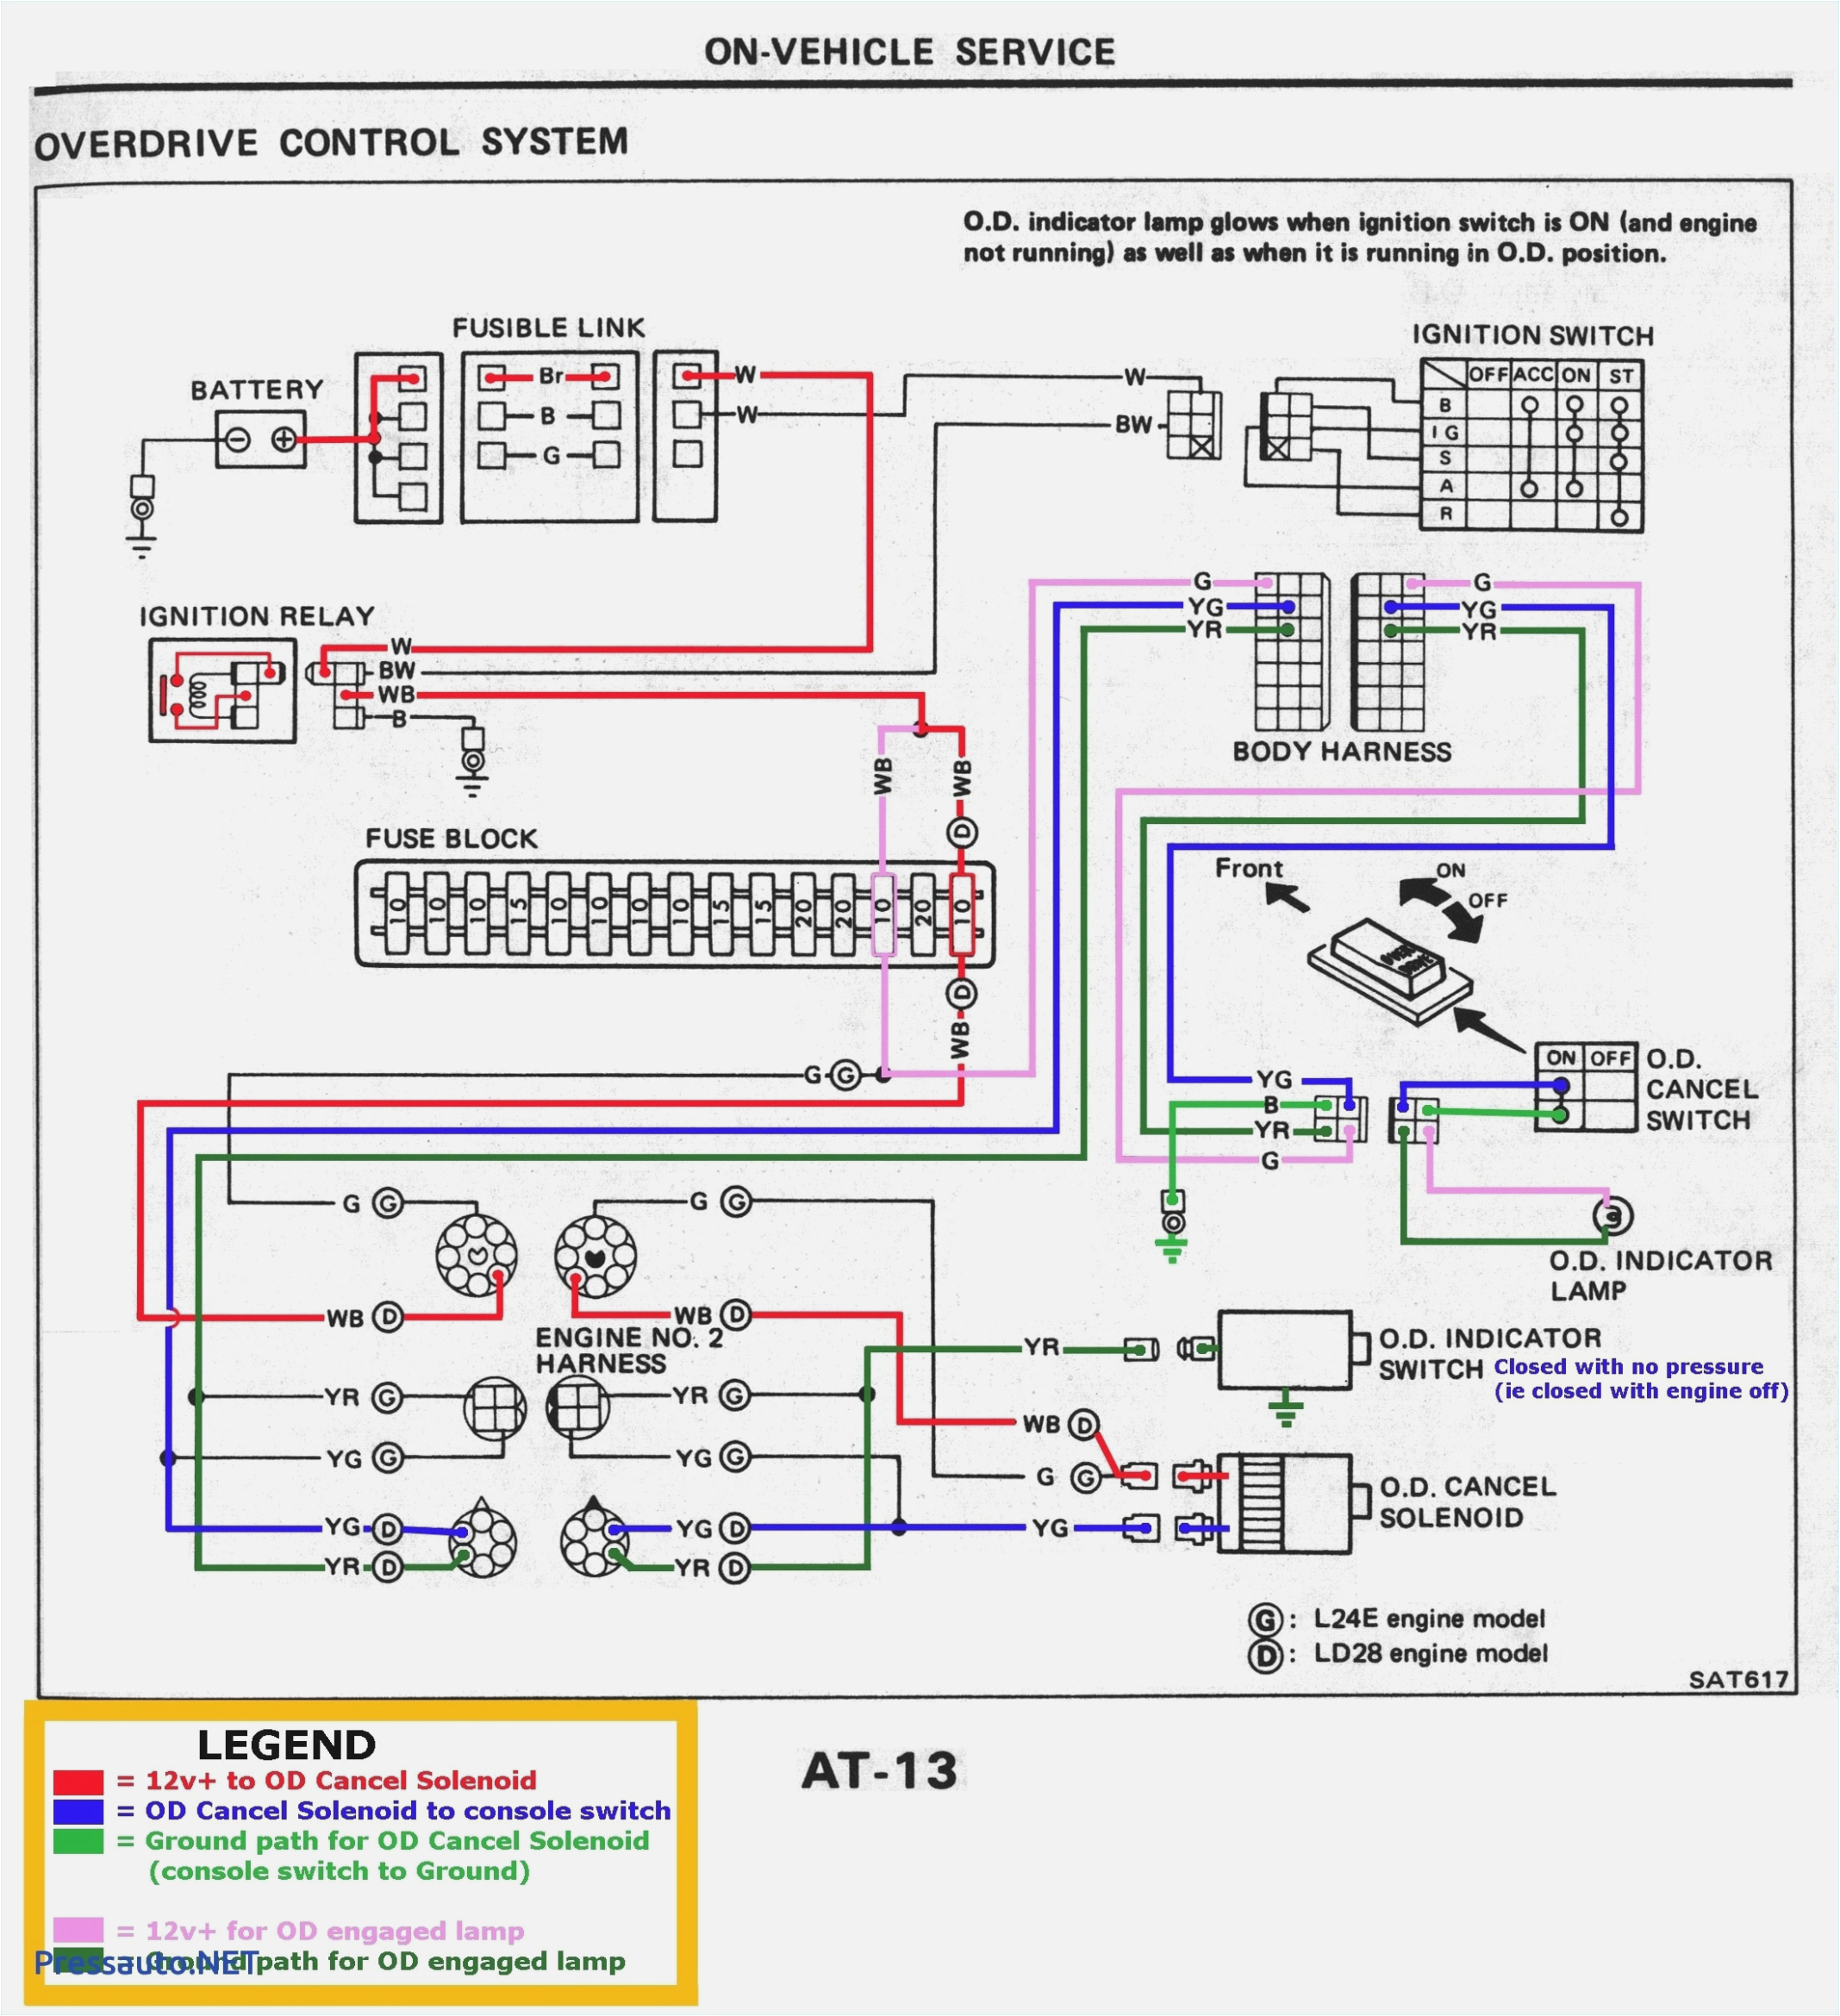 th8320wf1029 wiring diagram wiring diagram show th8320wf1029 wiring diagram